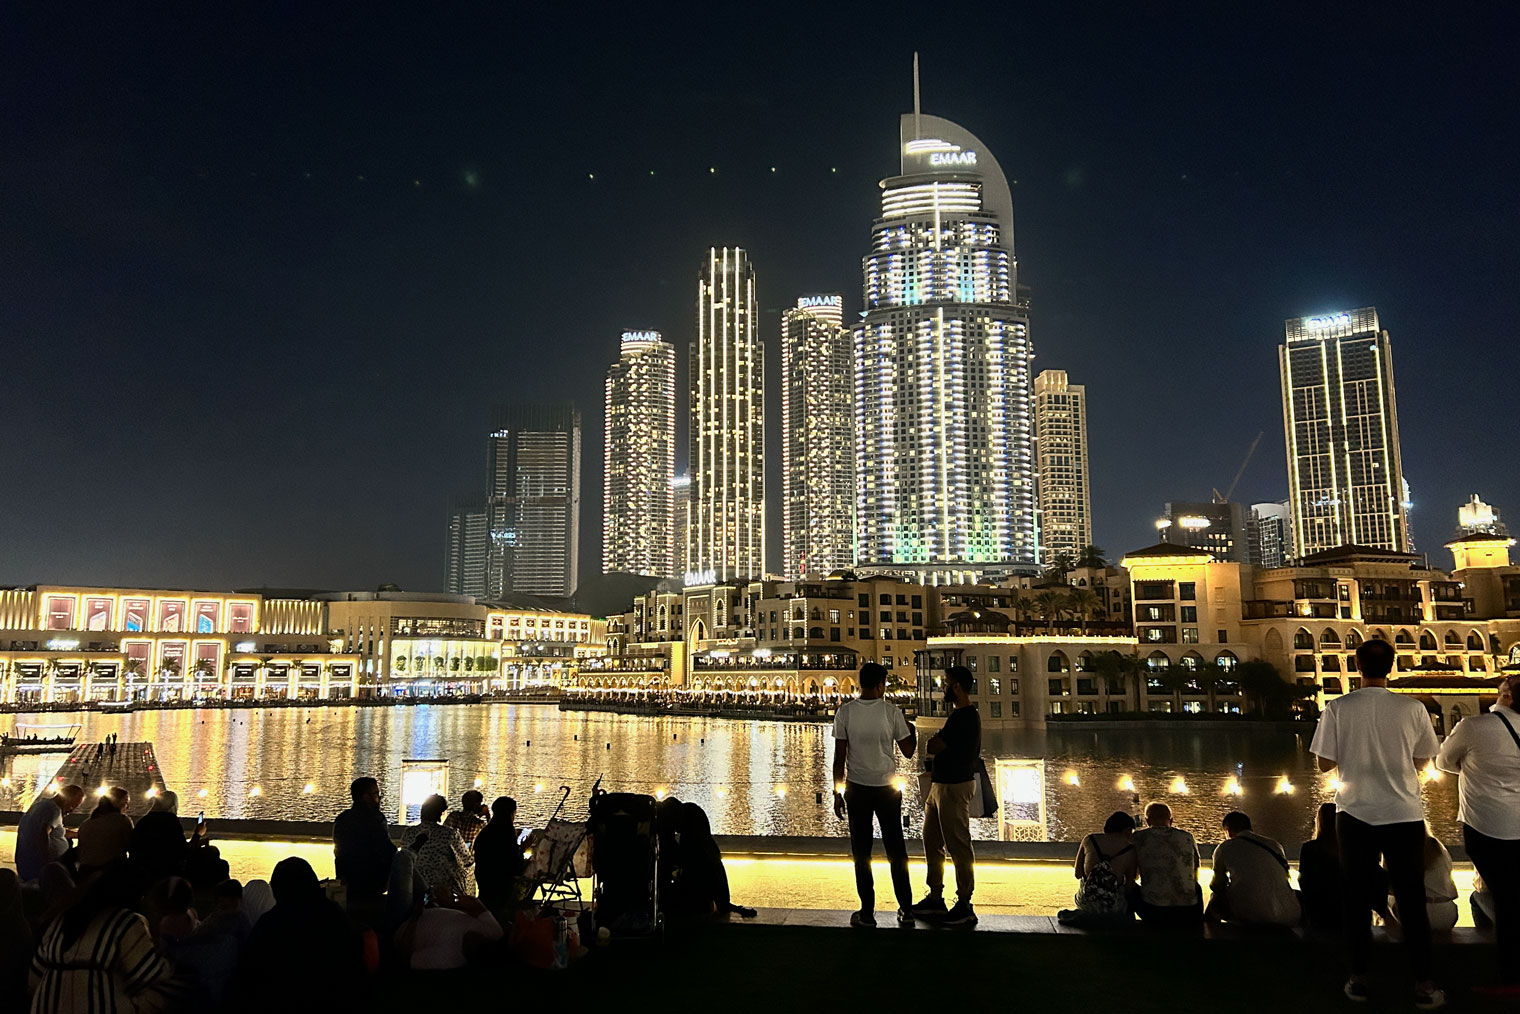 Напротив «Дубай-молла» есть небольшая видовая площадка. Вечером там можно сидеть на траве и смотреть на фонтаны